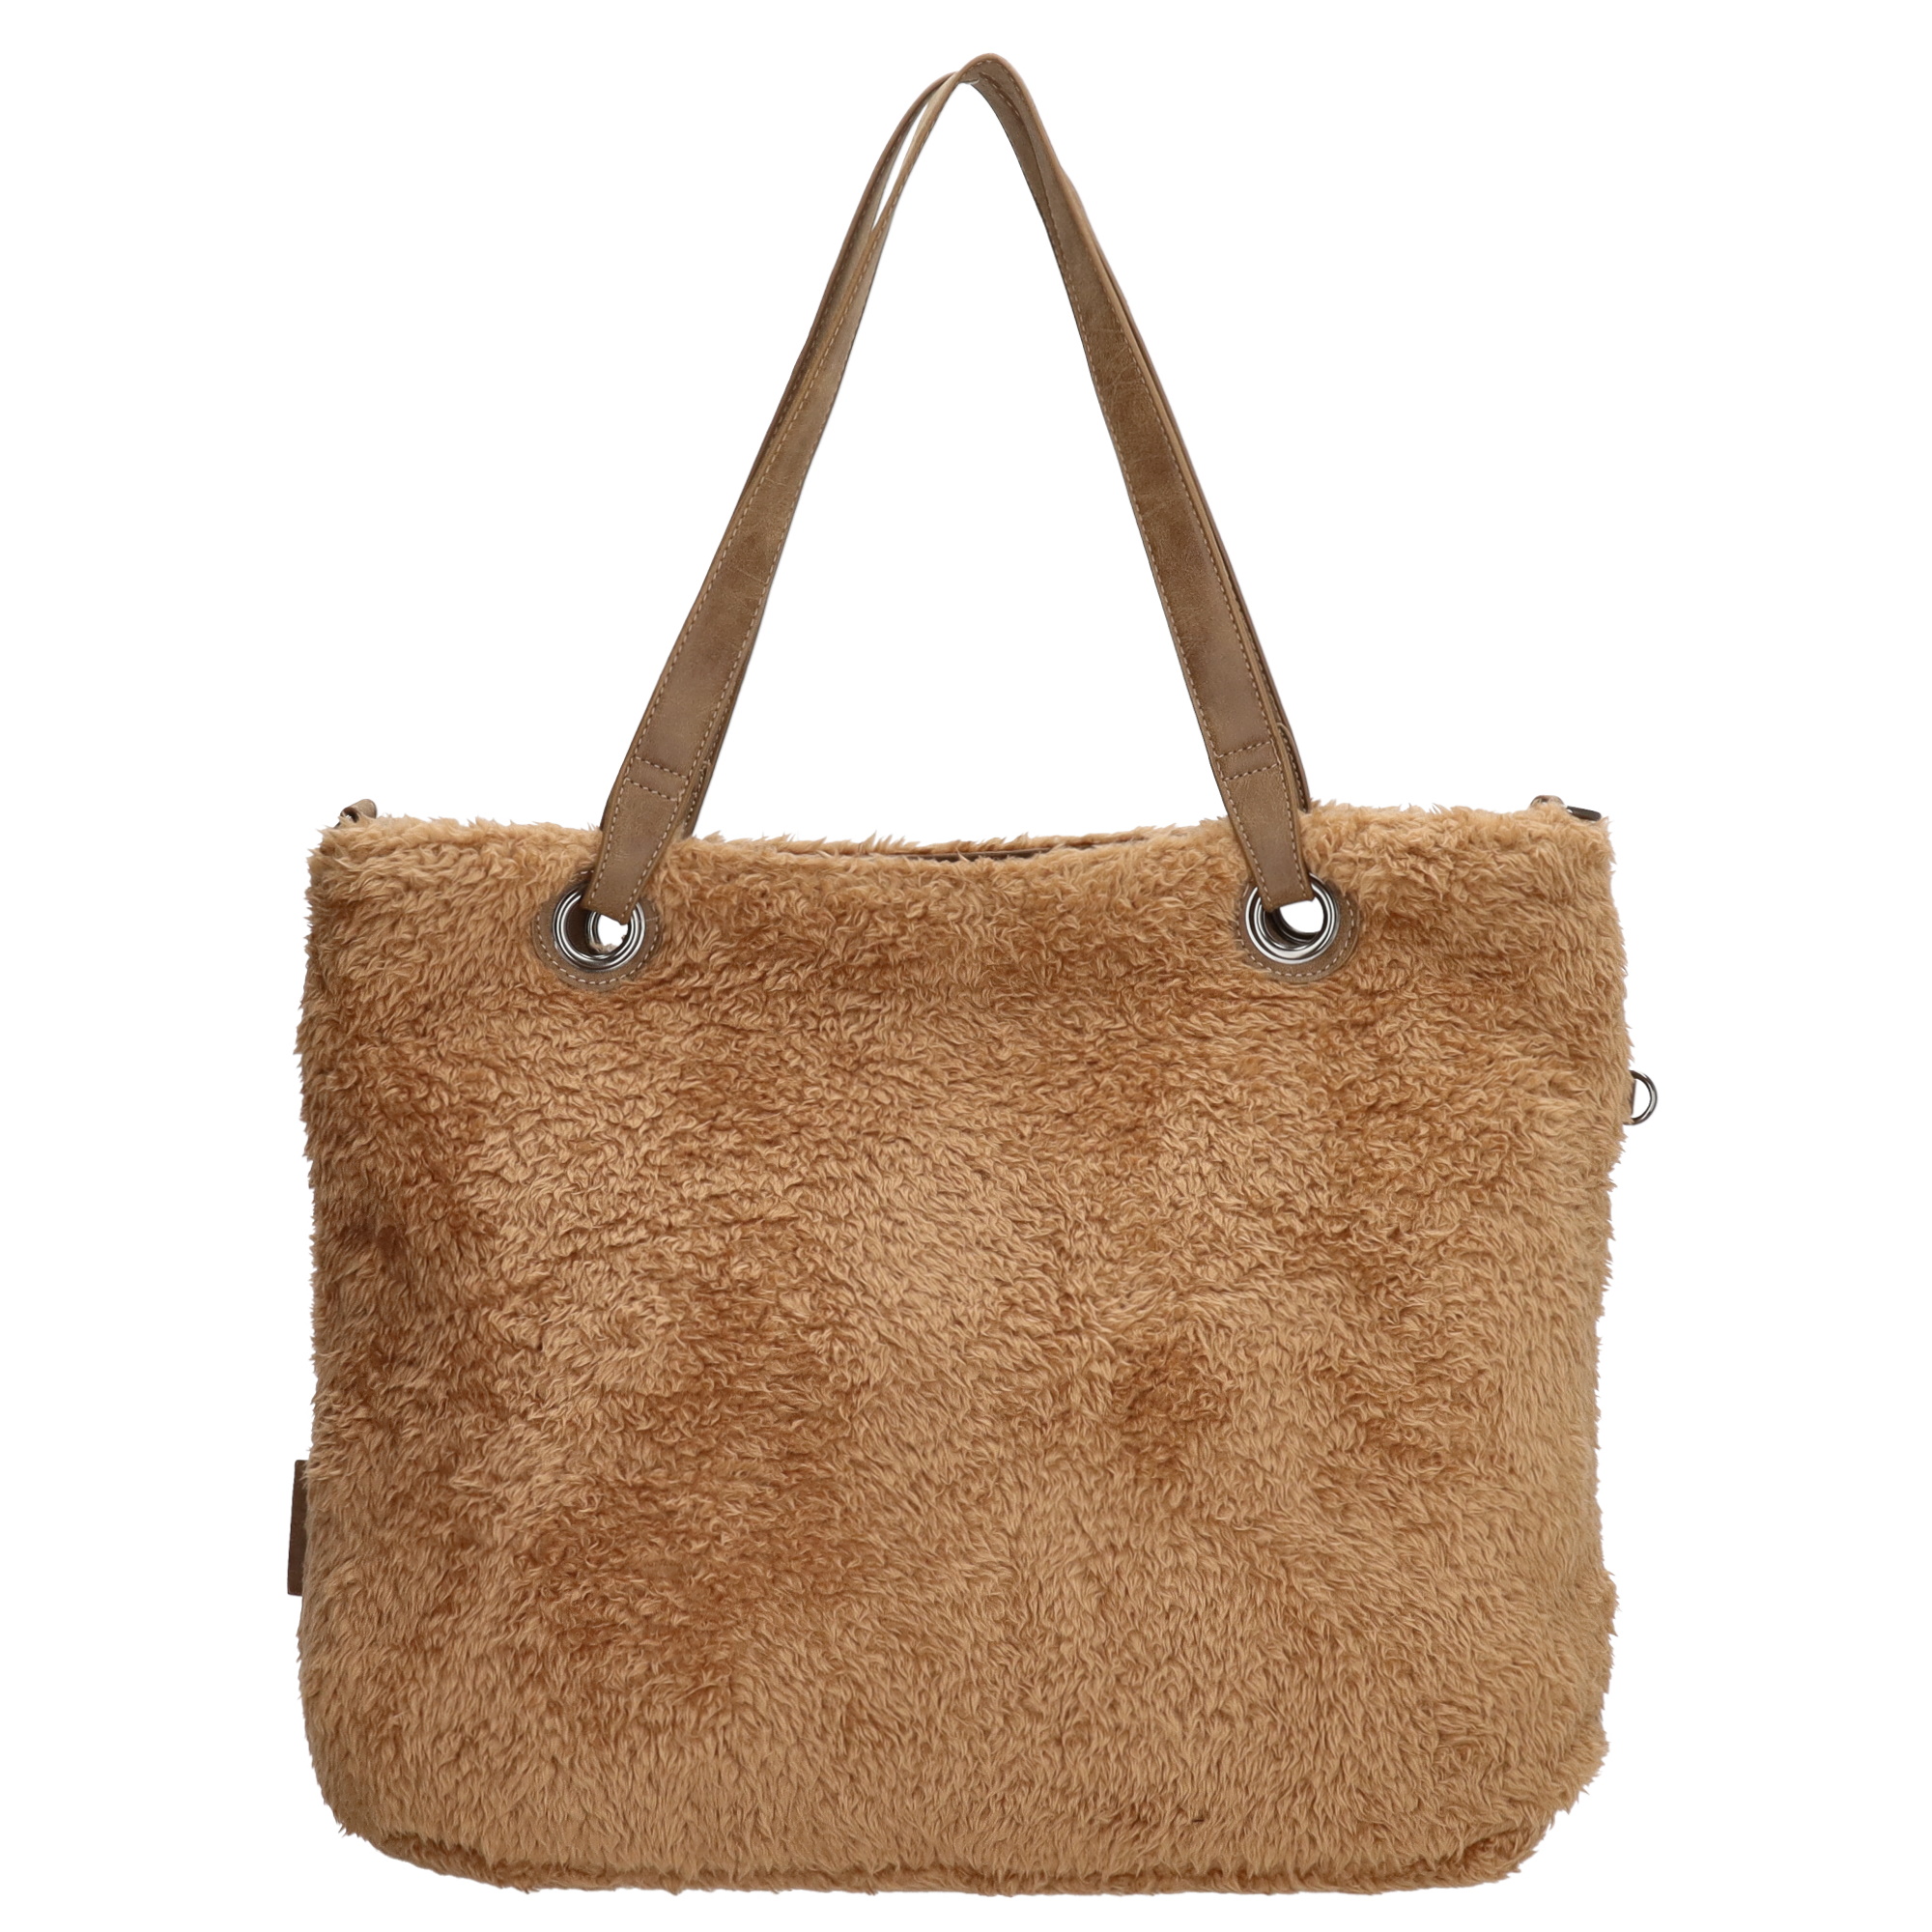 Stor handväska i teddymaterial med extra liten väska, brun väska